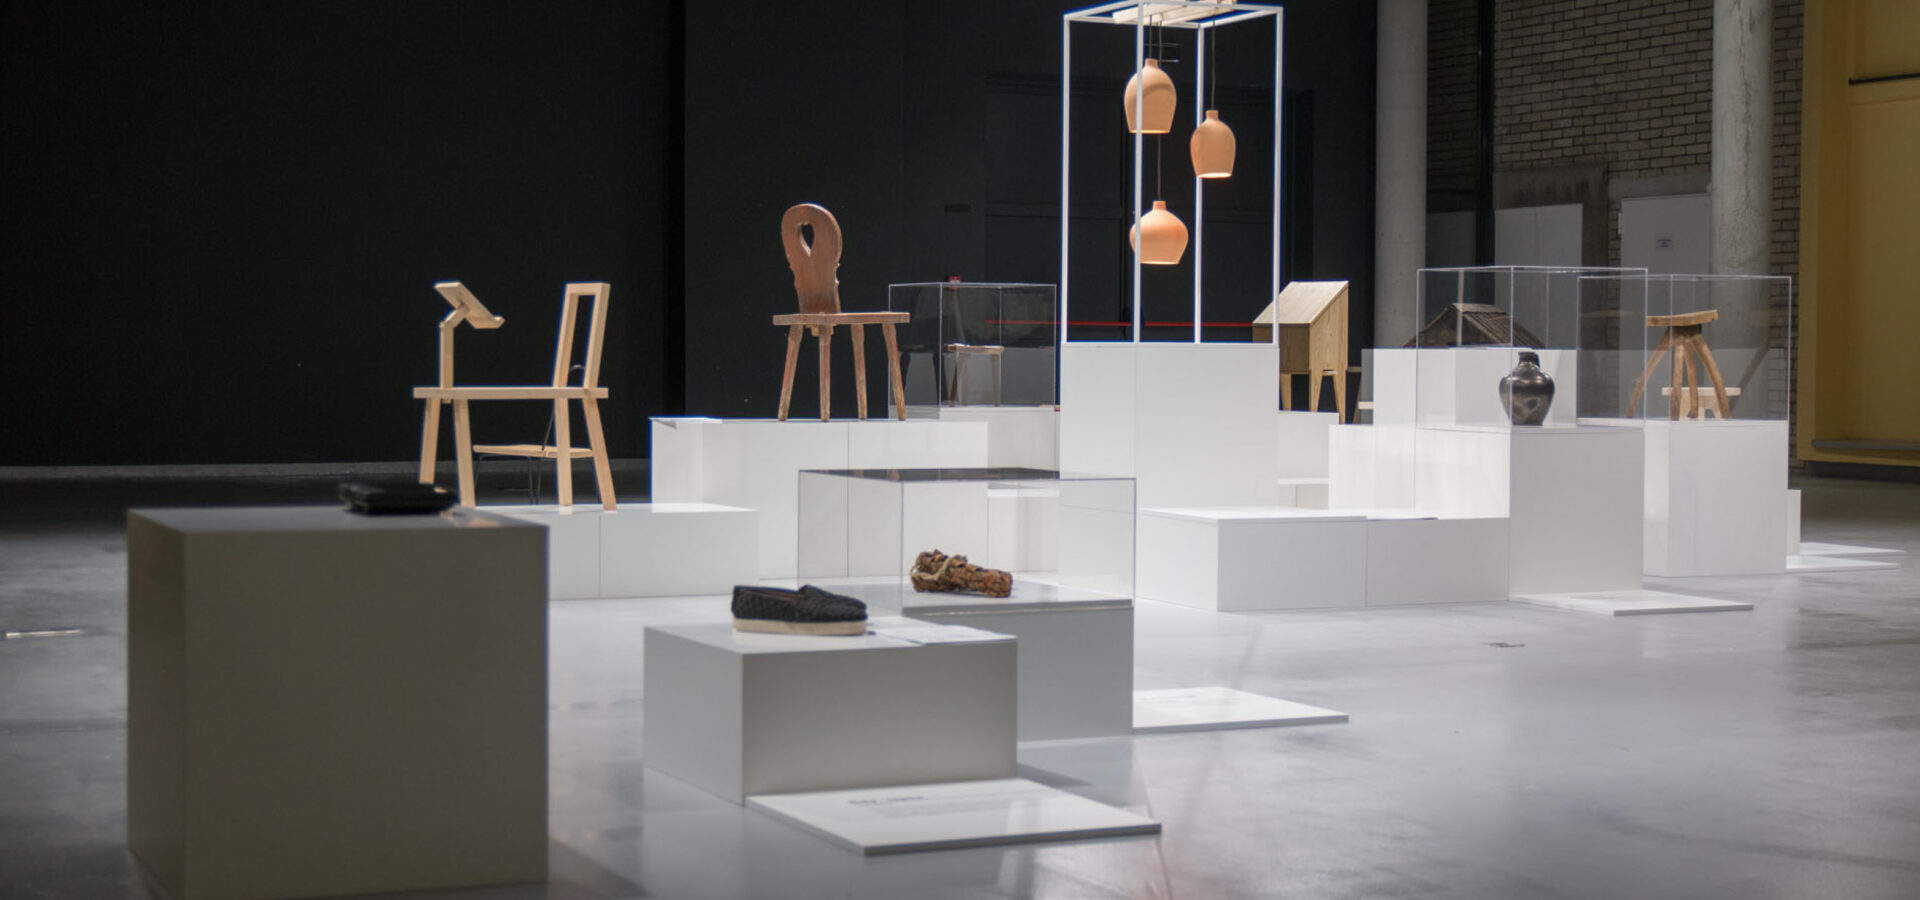 Wystawa – przestrzeń nie tylko ekspozycyjna